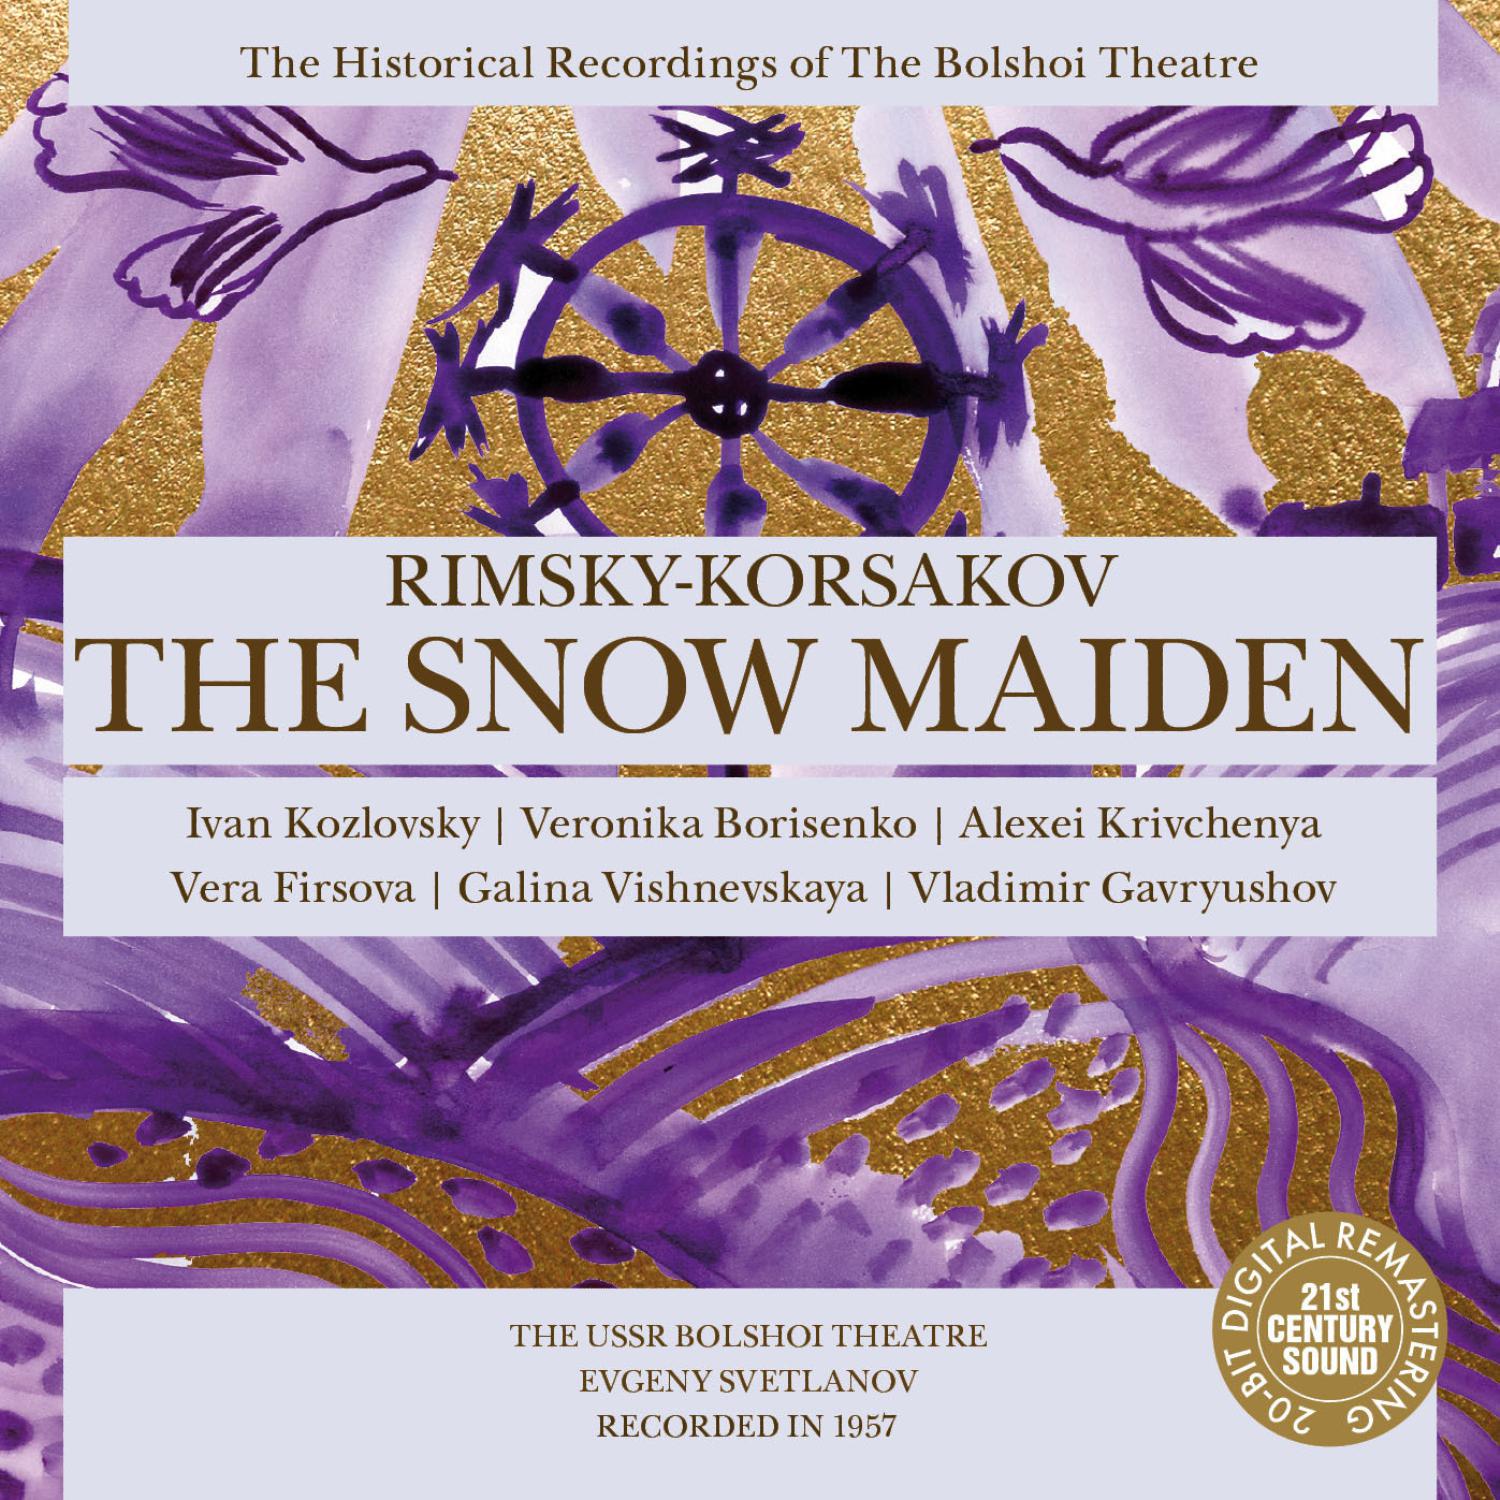 Vera Firsova - The Snow Maiden: Prologue, Scene of Snow Maiden, Frost & Spring: Aria of Snow Maiden - 